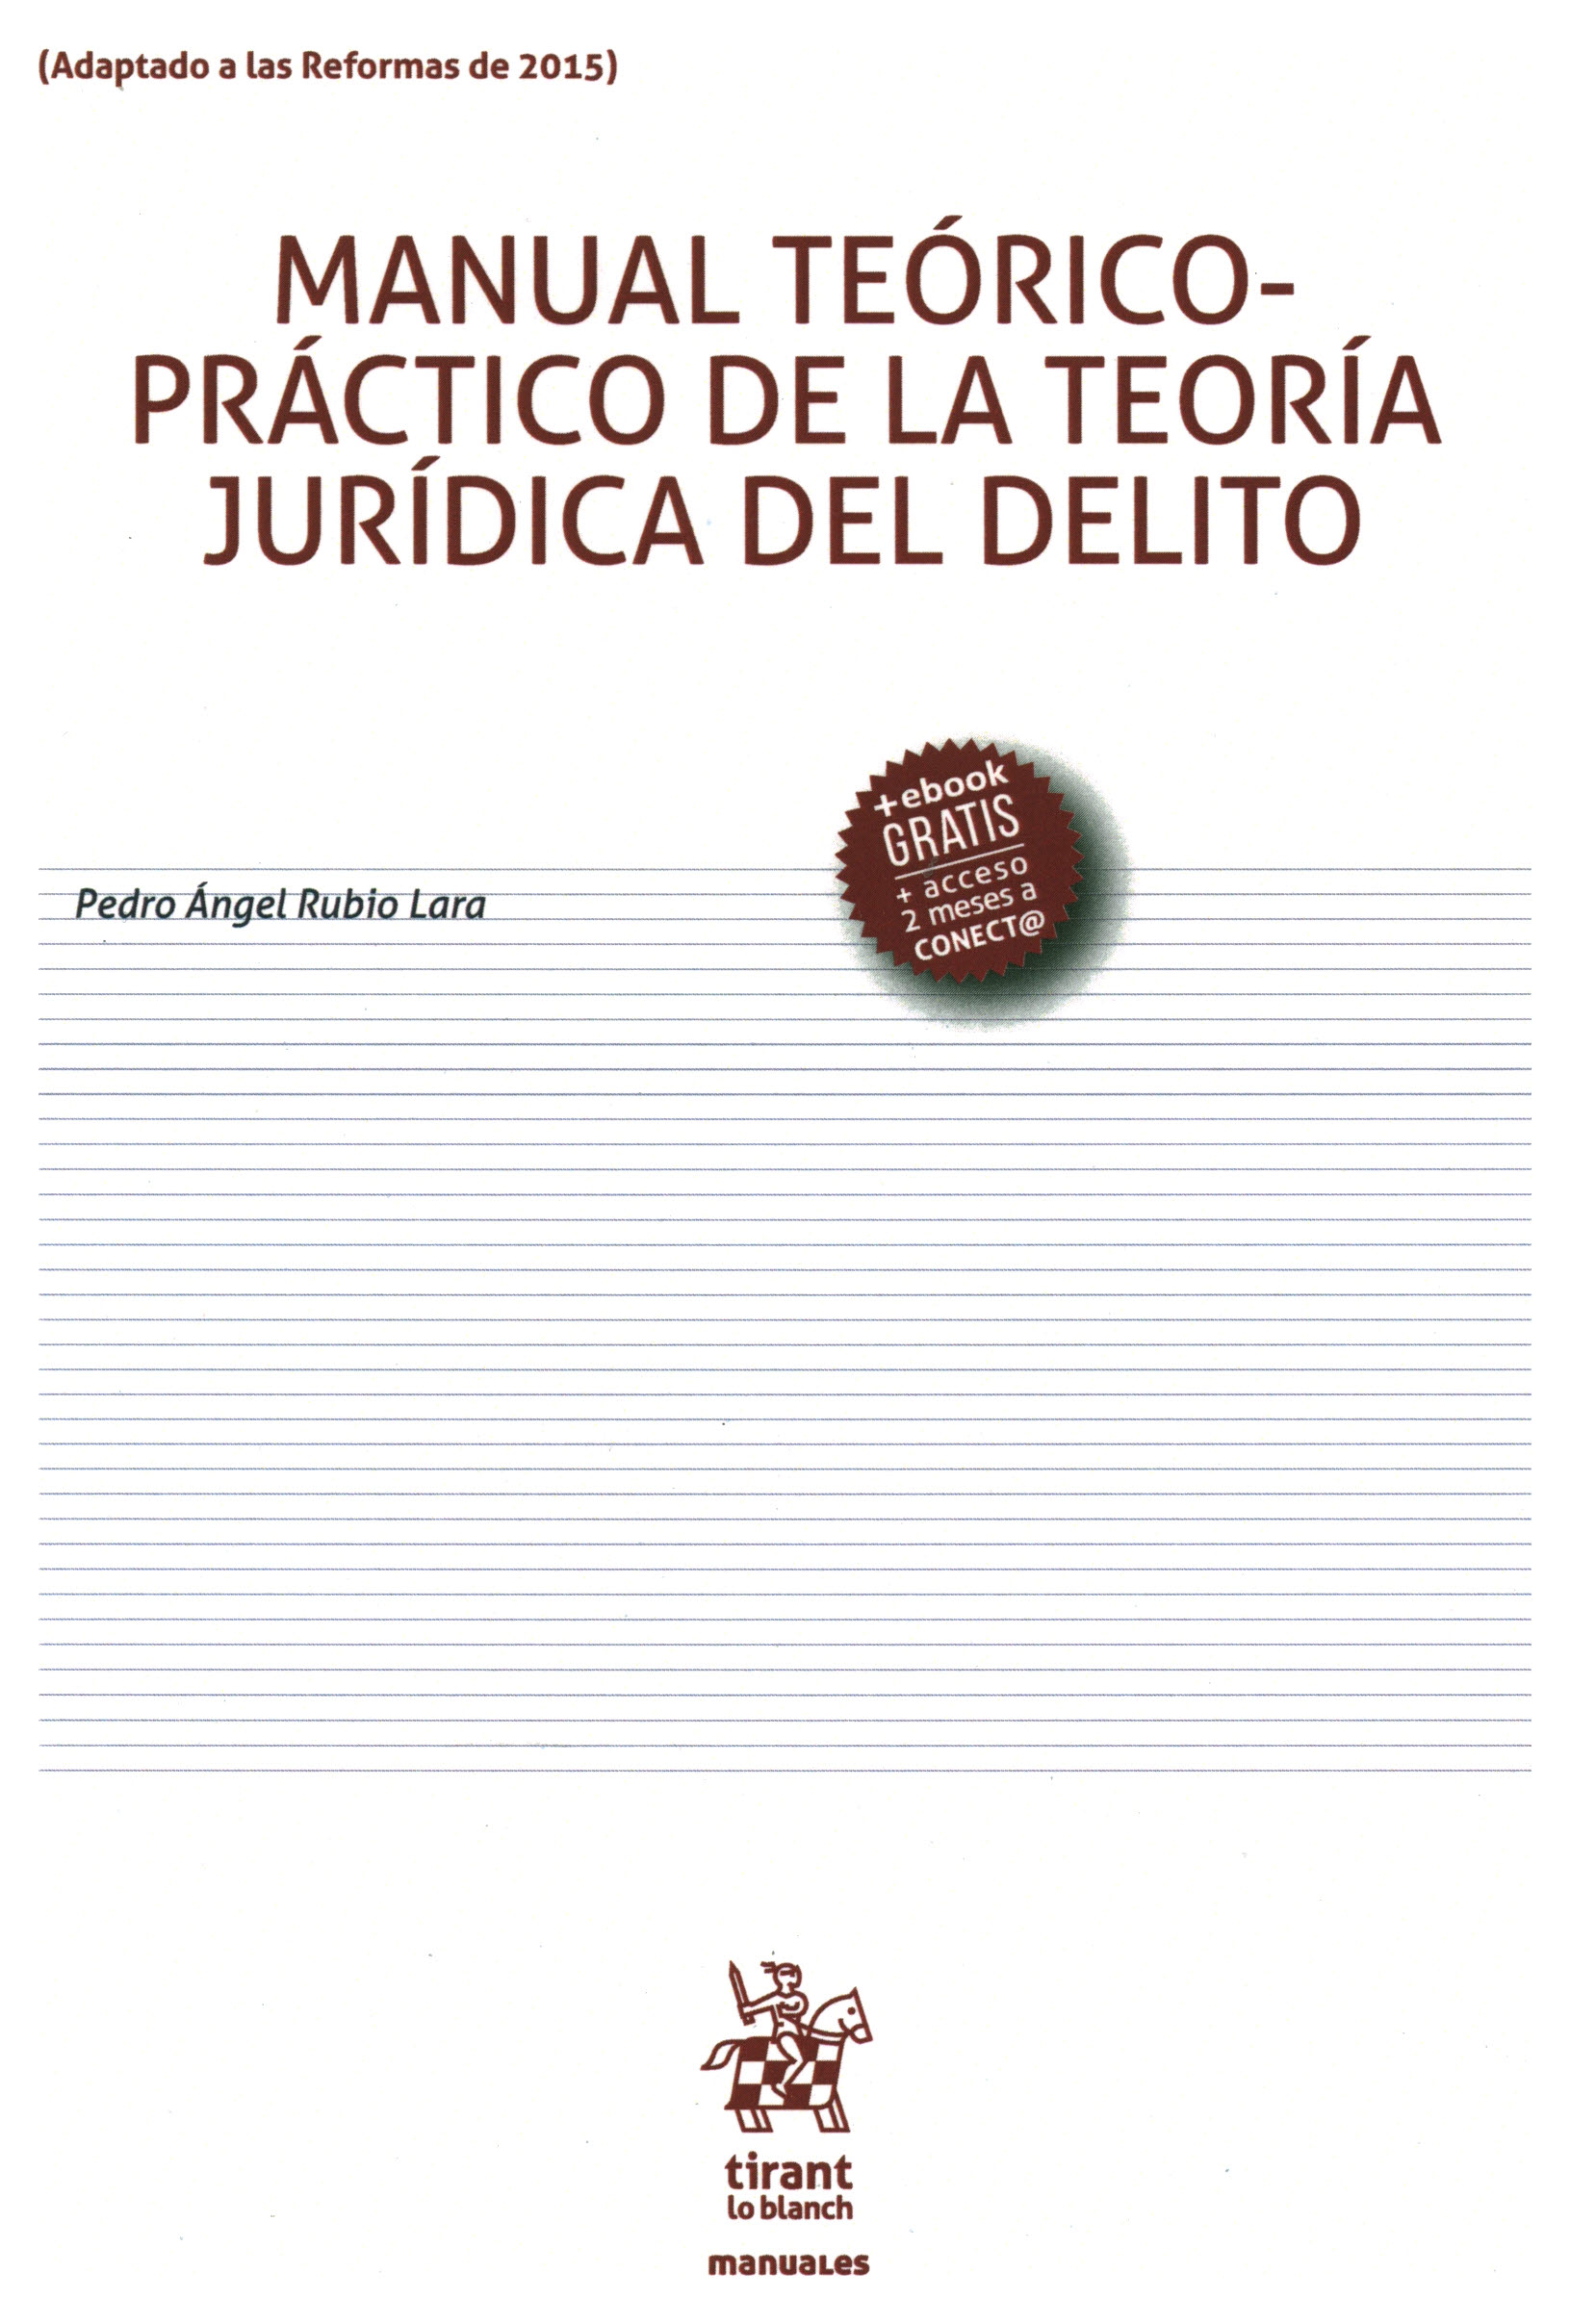 Manual teórico práctico de la teoría jurídica del delito ( Adaptado a las reformas de 2015 )